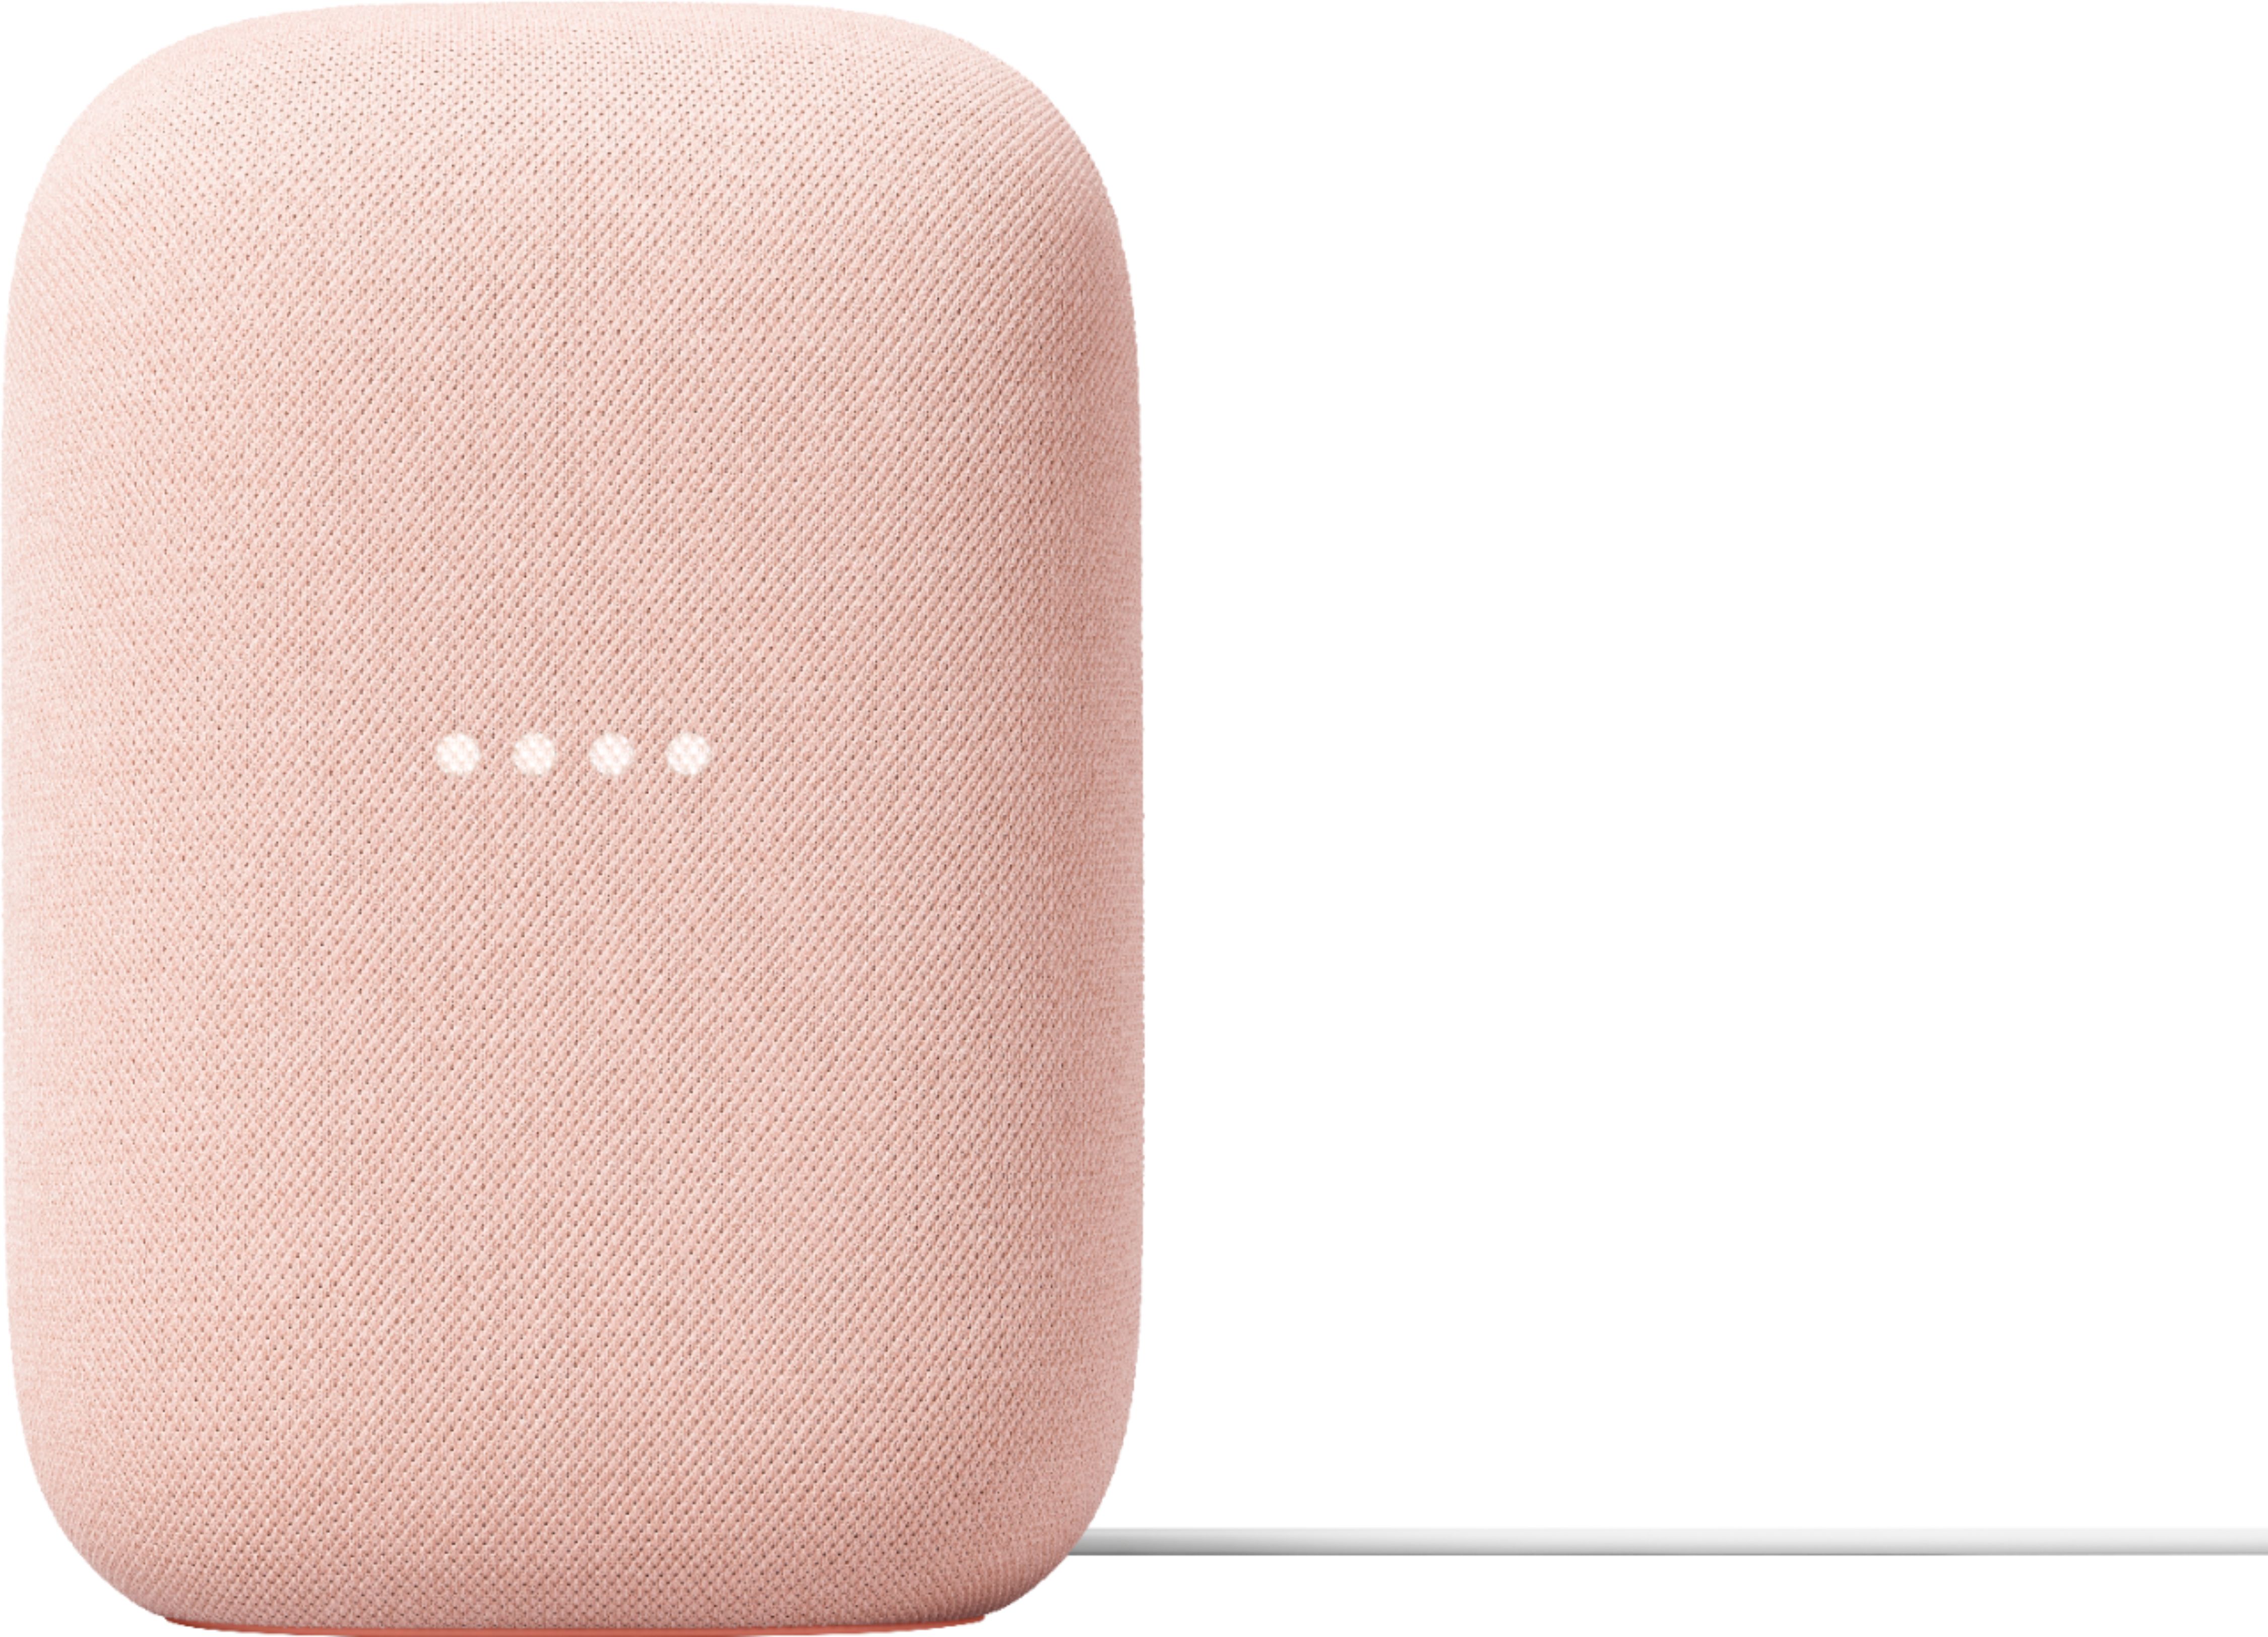 Google Nest Audio Smart Speaker Sand GA01587-US - Best Buy